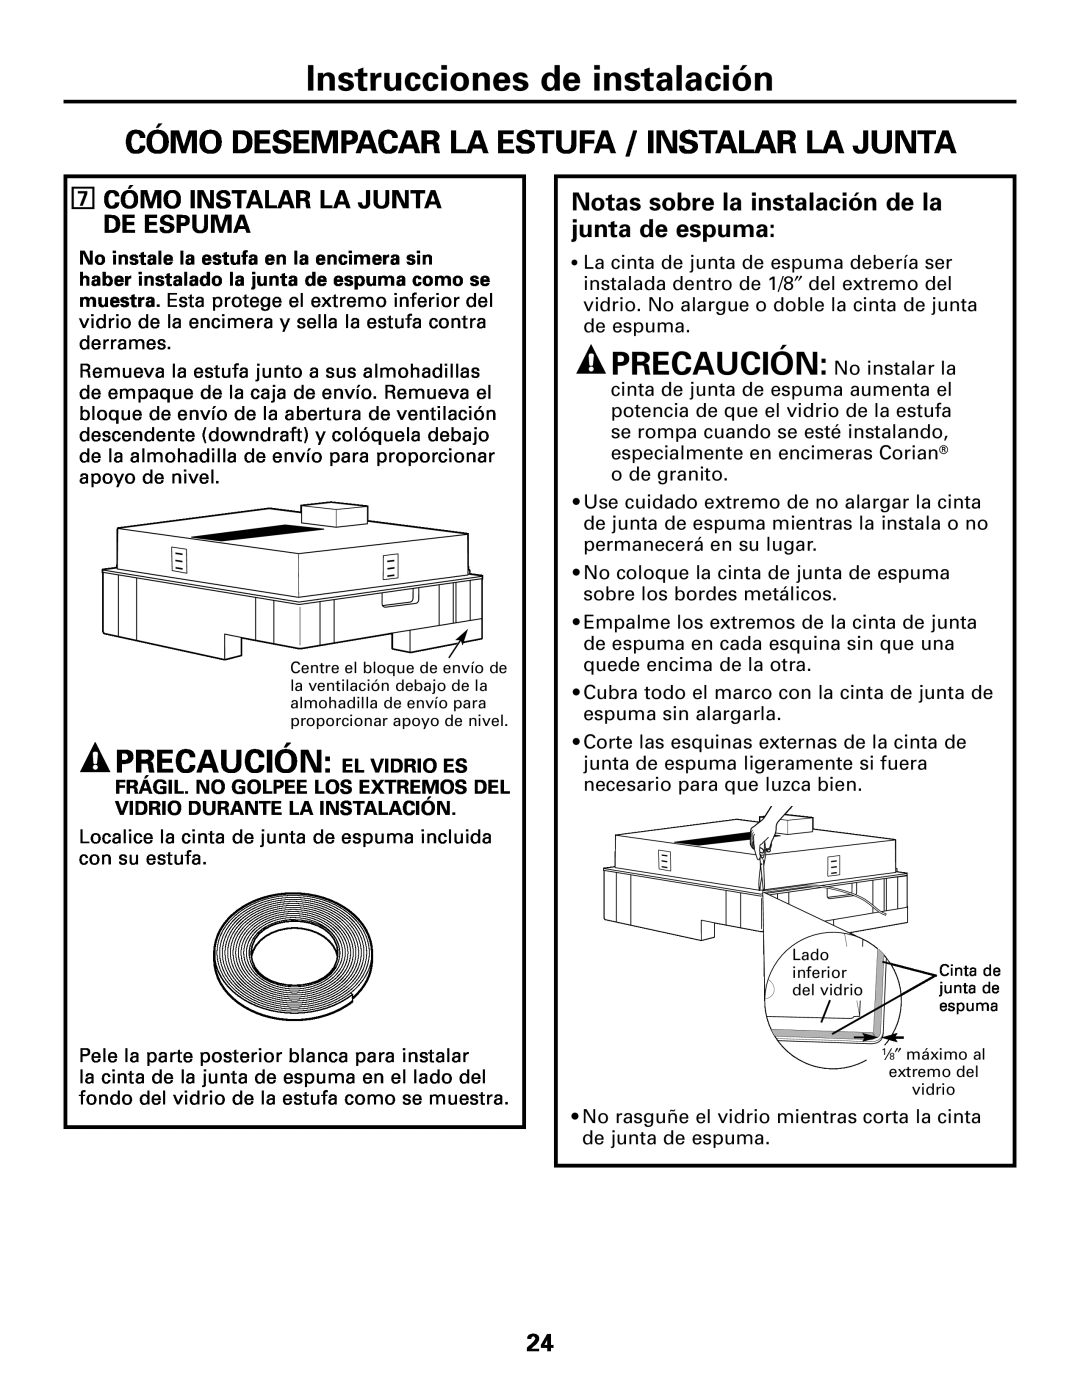 GE JGP989 manual Cómo Desempacar La Estufa / Instalar La Junta, Precaución El Vidrio Es, Instrucciones de instalación 